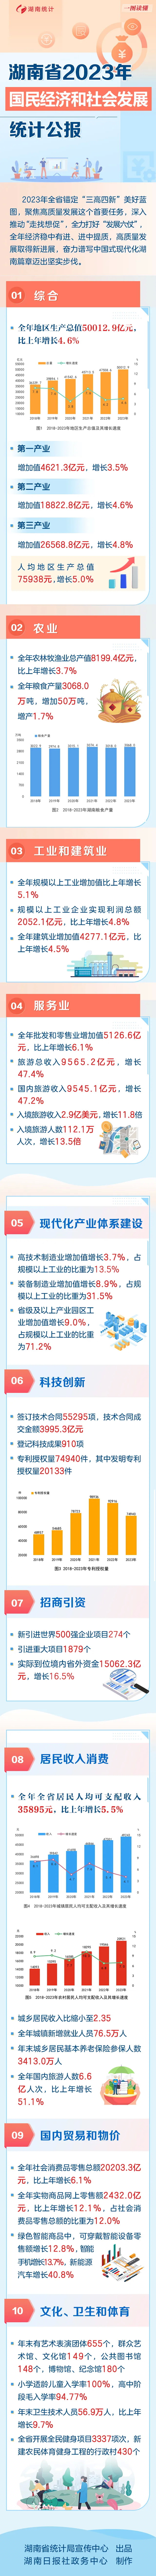 湖南2023年国民经济和社会发展统计公报.jpg